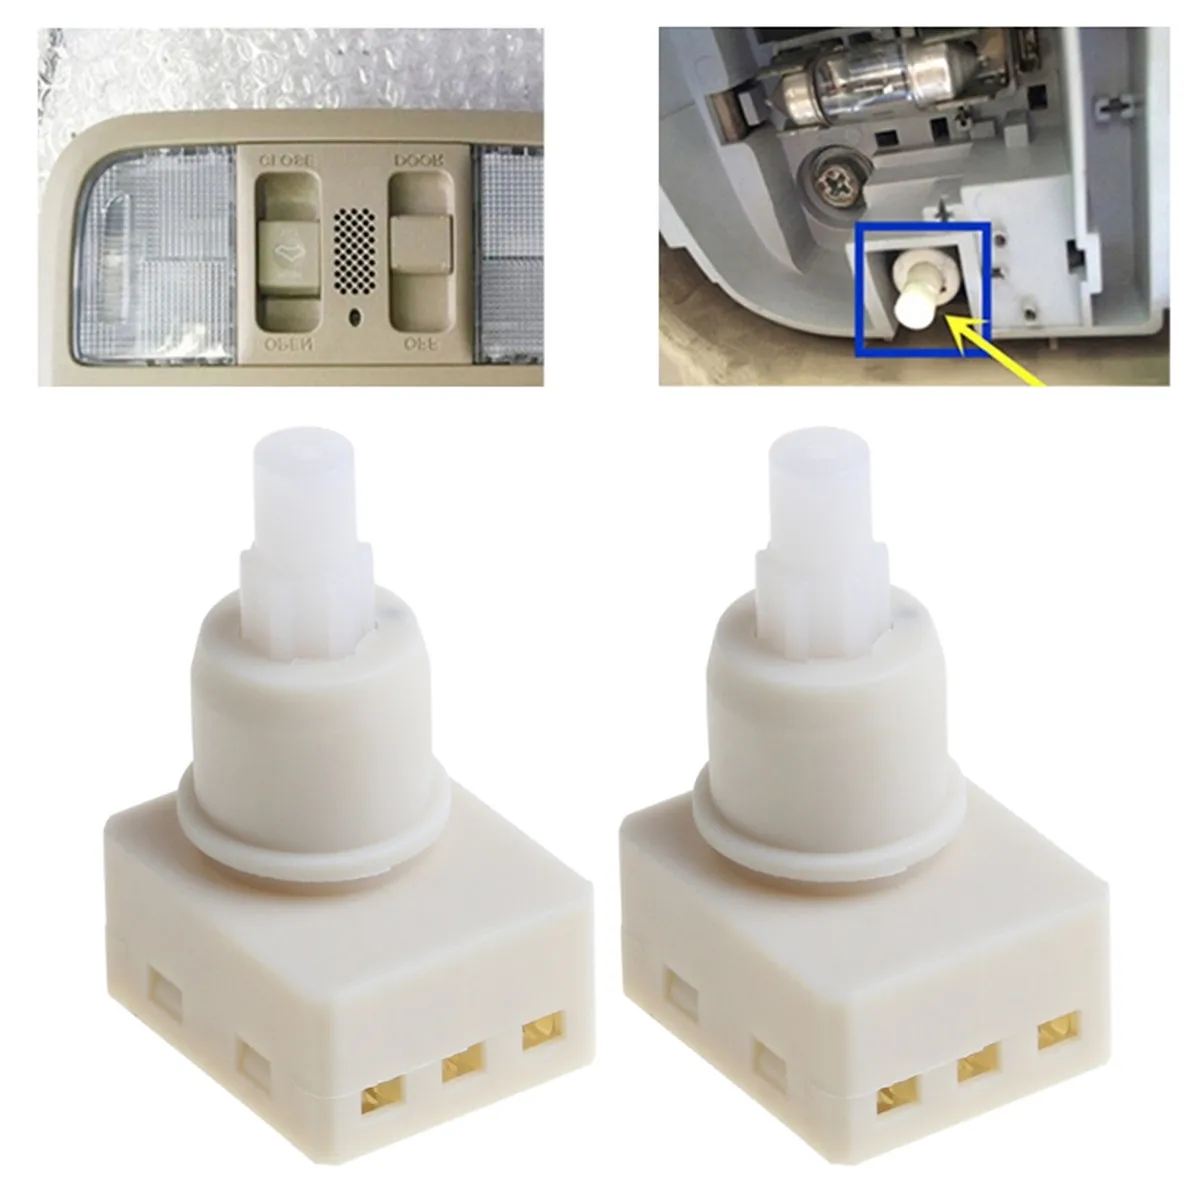 

2 Pcs Interior Dome Light Lamp Switch Sensor for Honda Accord CR-V Pilot Odyssey Pilot Ridgeline Acura TSX 34404-SDA-A21 924-798